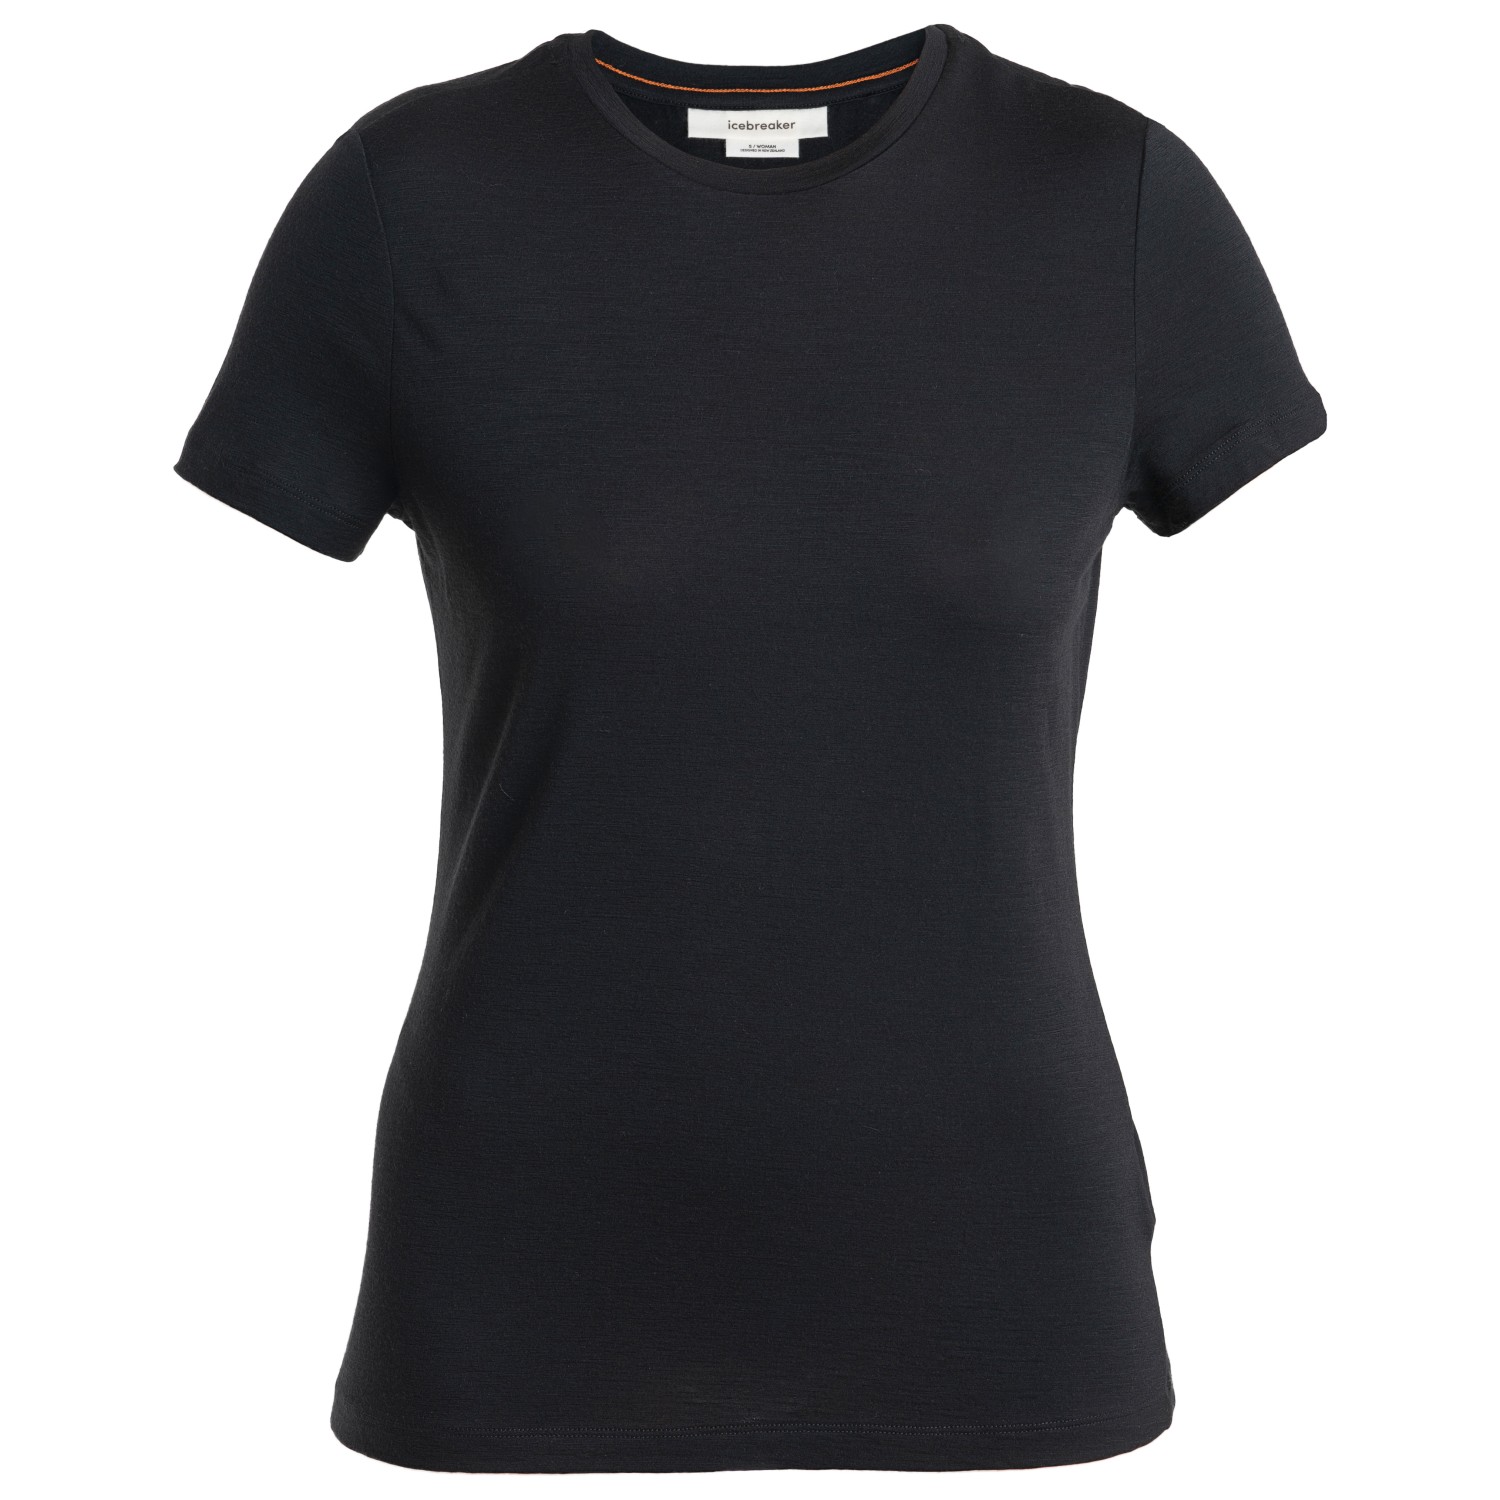 Рубашка из мериноса Icebreaker Women's Merino 150 Tech Lite III S/S Tee, черный цена и фото